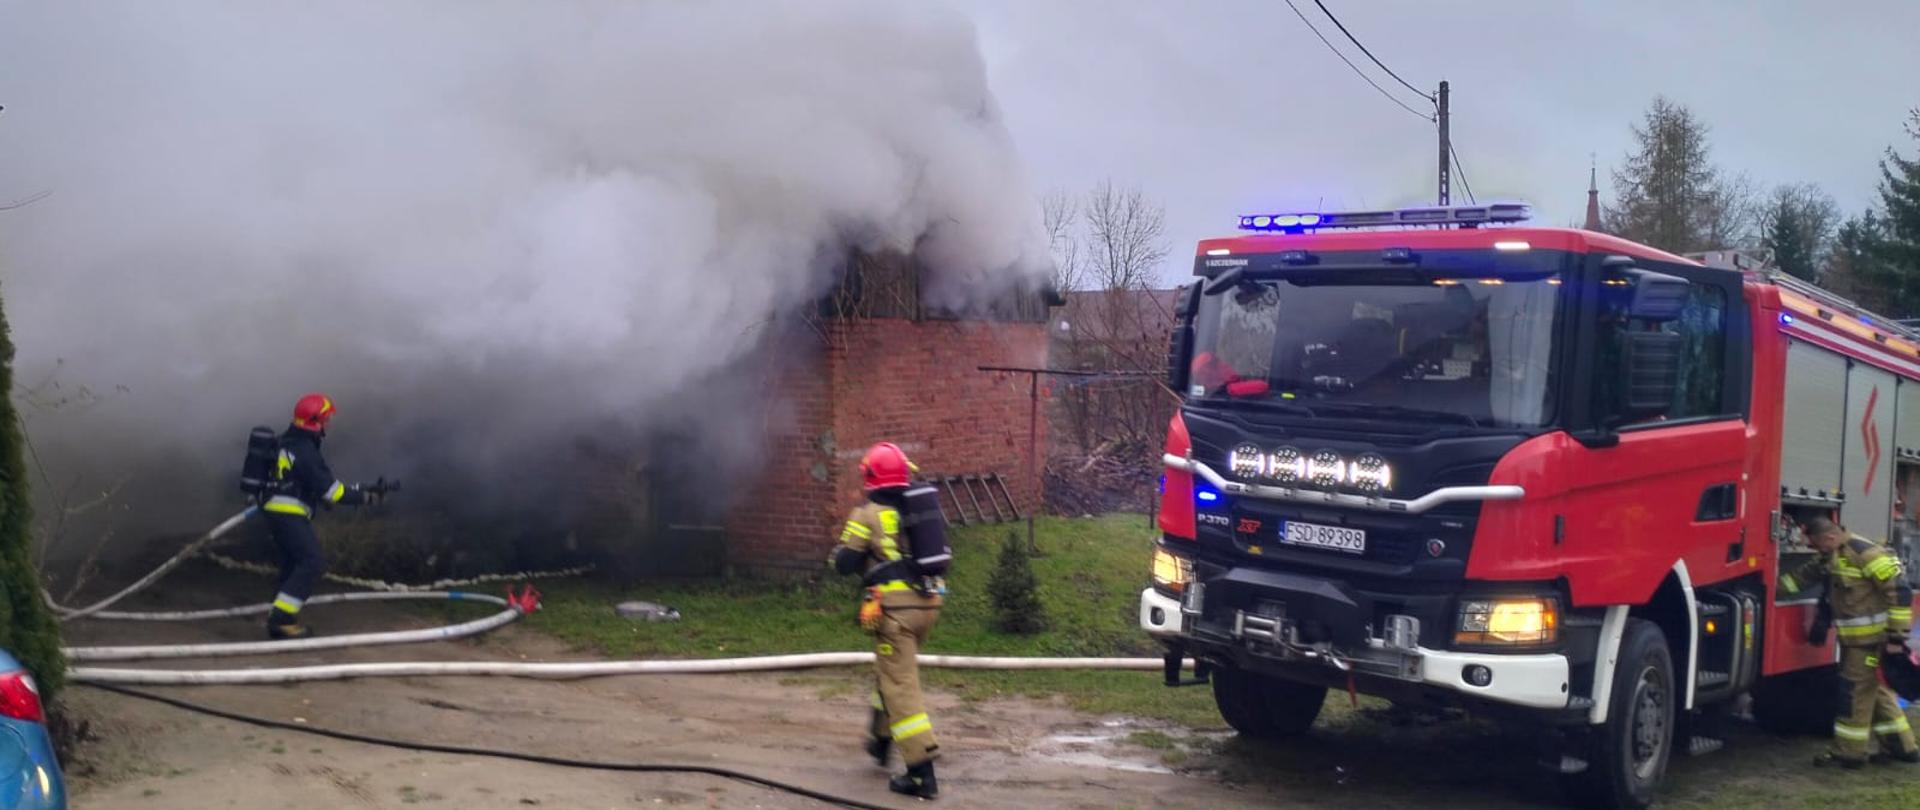 Fotografa przedstawia widok budynku gospodarczego, z którego wydobywają się duże ilości dymu, przy budynku strażacy podają prądy wody, obok widoczny pojazd pożarniczy i inni ratownicy wyciągający z niego sprzęt.